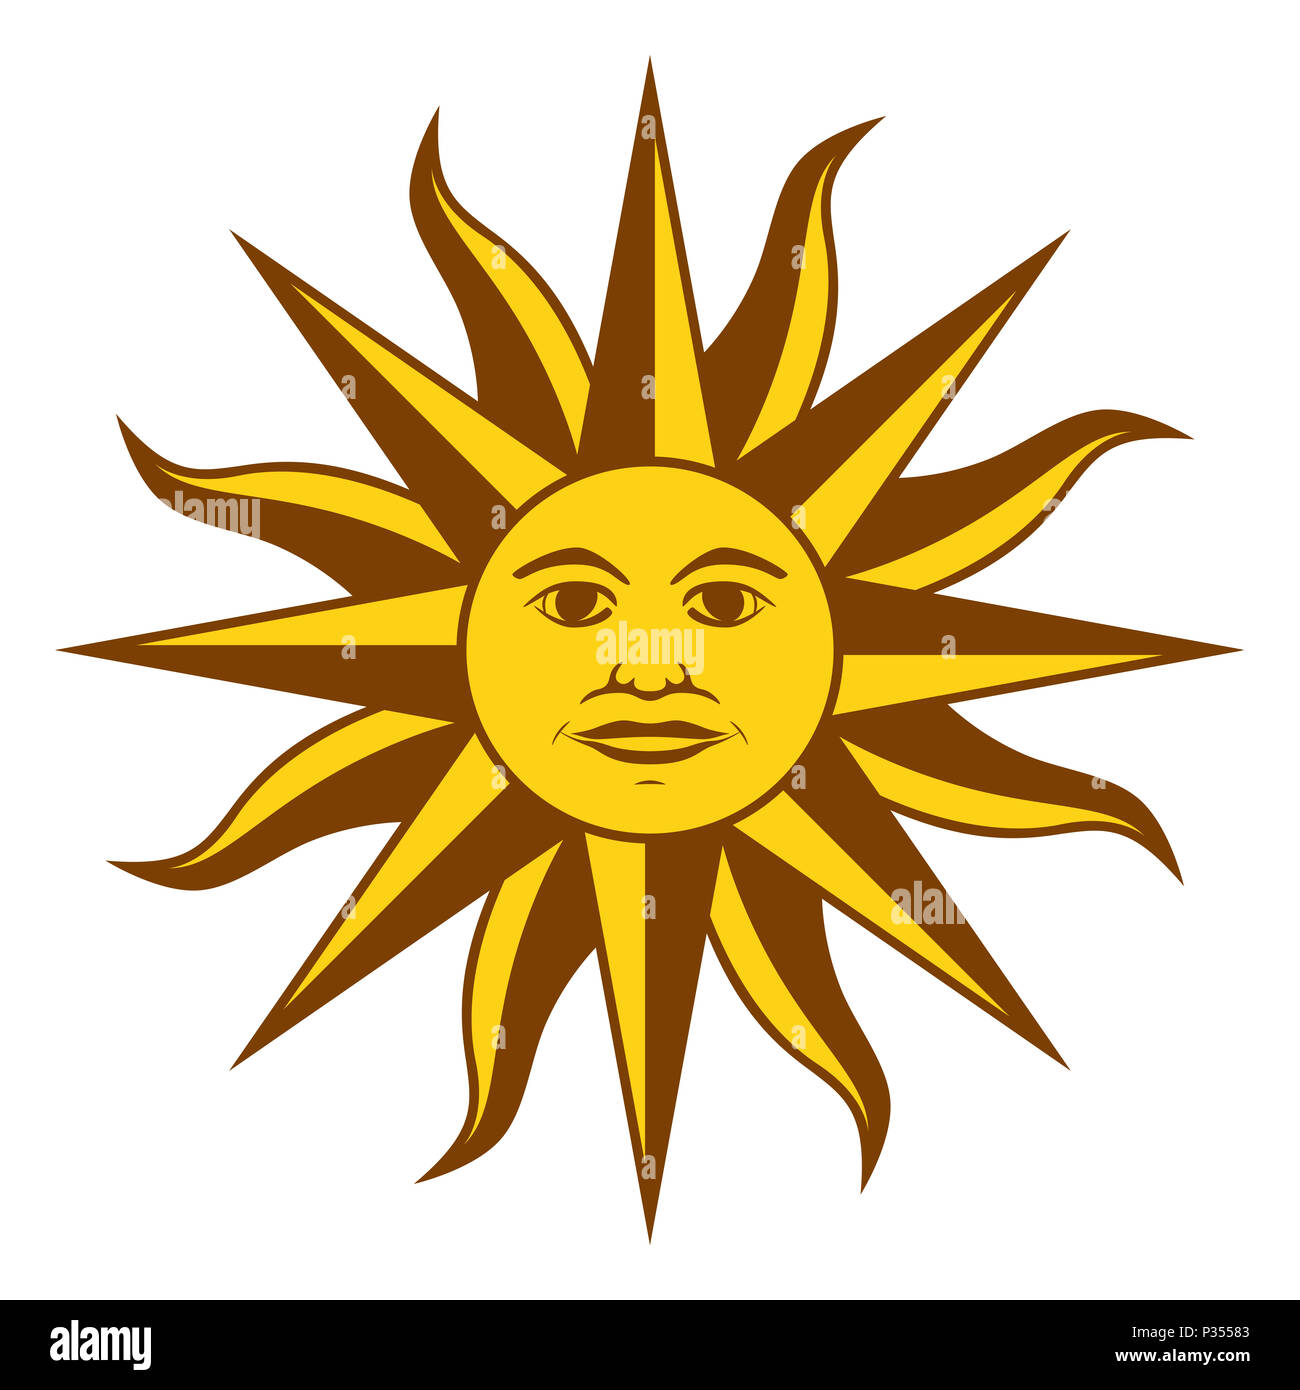 Soleil de Mai, l'espagnol Sol de Mayo, un emblème national de l'Uruguay sur le drapeau du pays. Golden yellow sun radiant de la face et des raies. L'illustration. Banque D'Images